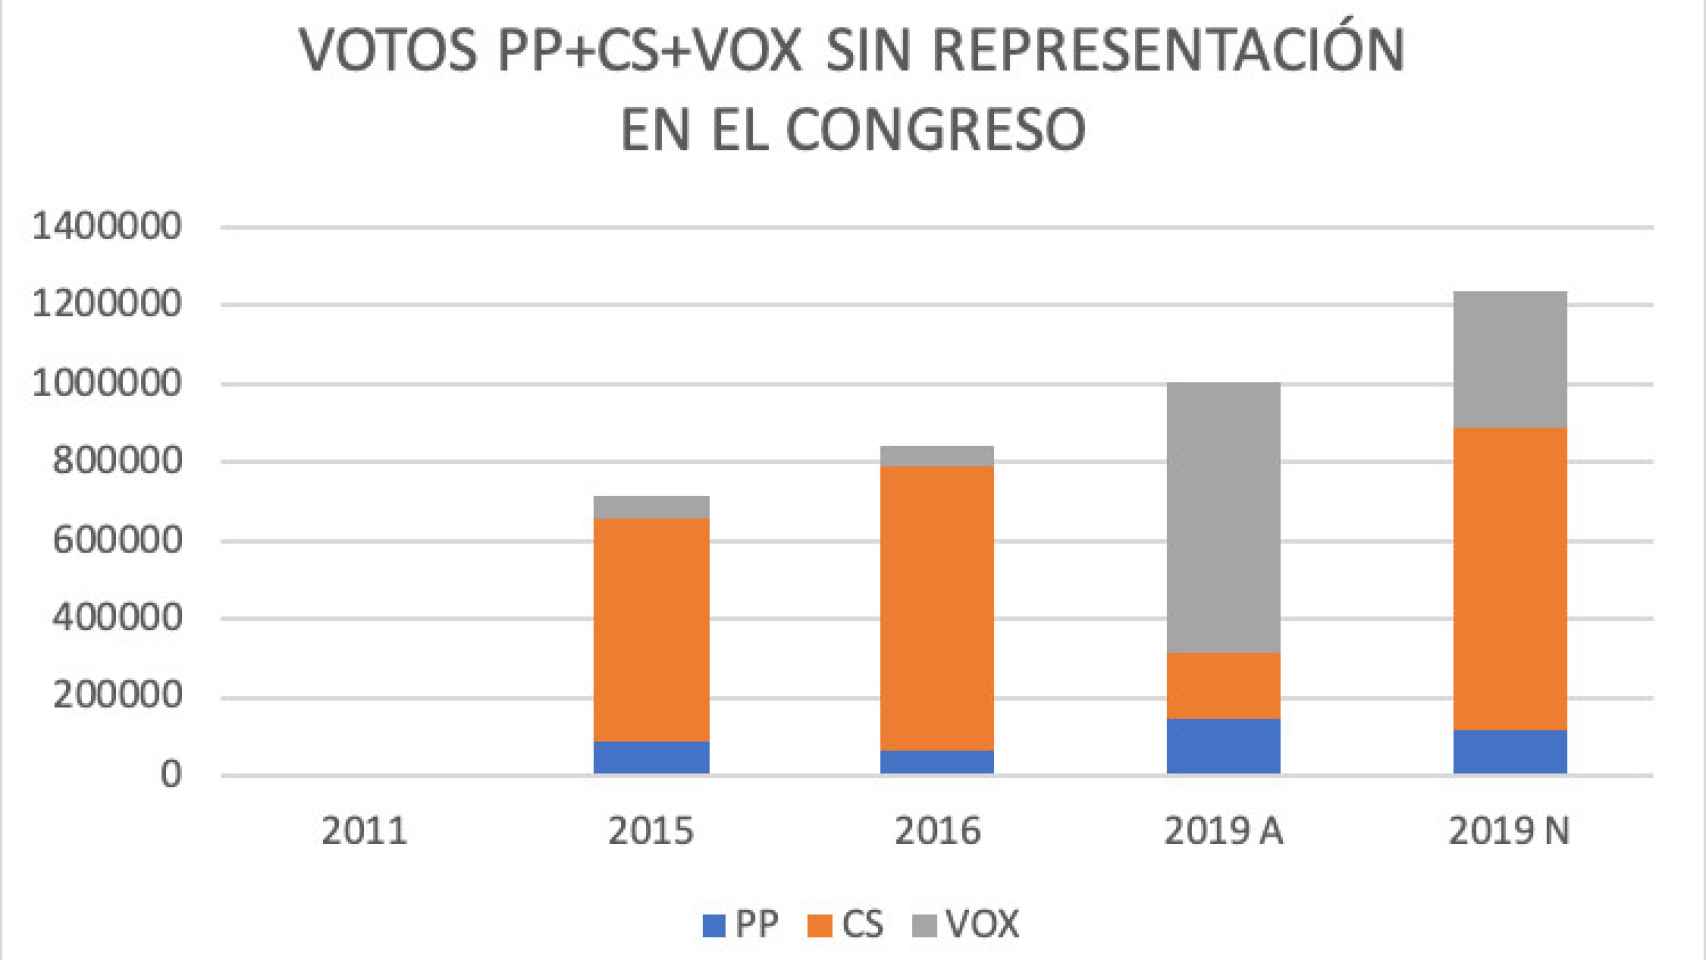 Votos PP + Ciudadanos + Vox entre 2011 y 2019 sin representación en el Congreso.